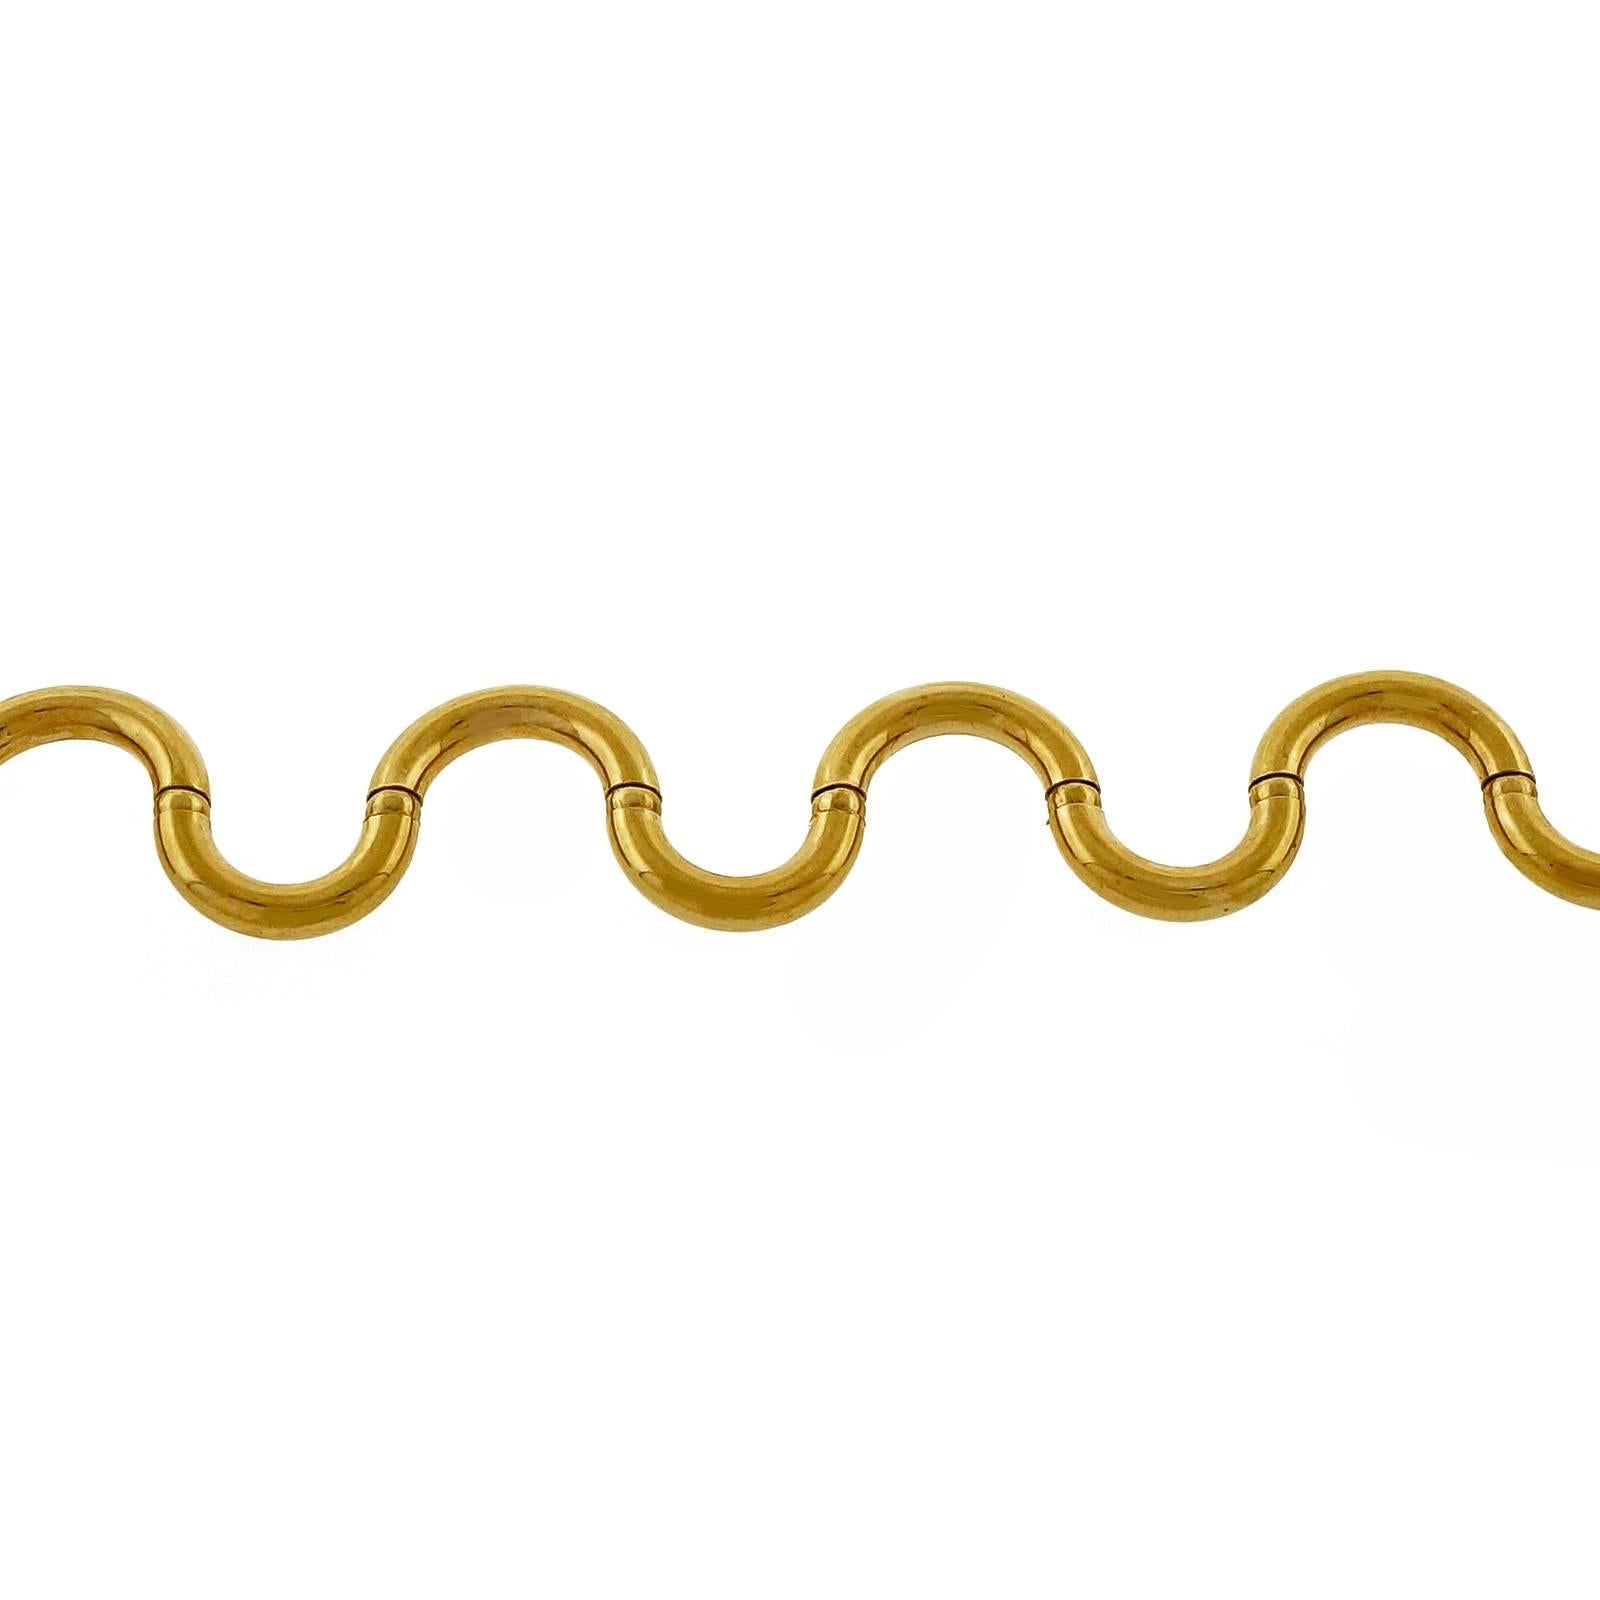 UnoAErre 1970's Italian unique Brev swirl hinged link necklace, 16 inches long, circa 1970-1980.

Or jaune 18k
26.7 grammes
Testé : 18k
Estampillé : 750
Poinçon : BREV
Longueur : 16 pouces - Largeur : 6.10mm - Profondeur : 3.19mm
